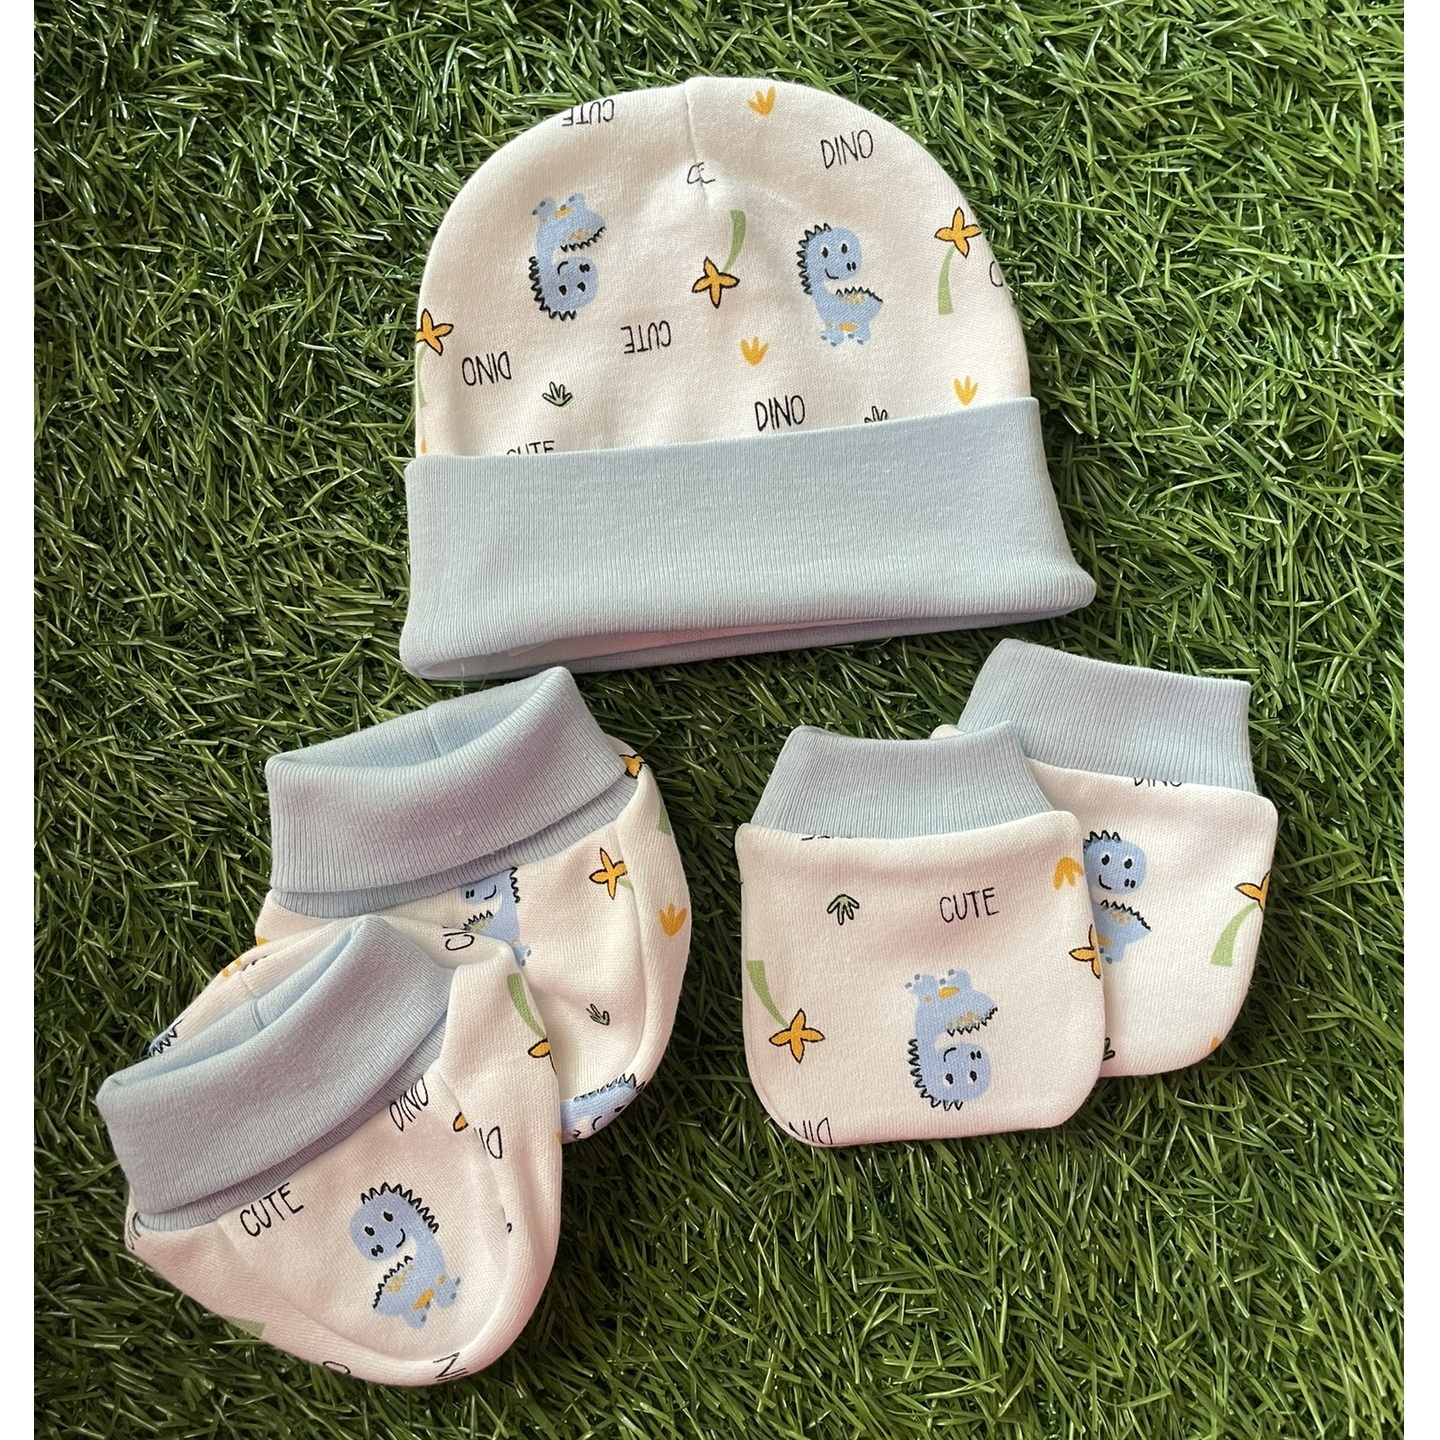 Cradle Togs Newborn BabyCap Mitten Booties Set Rs 340 Only